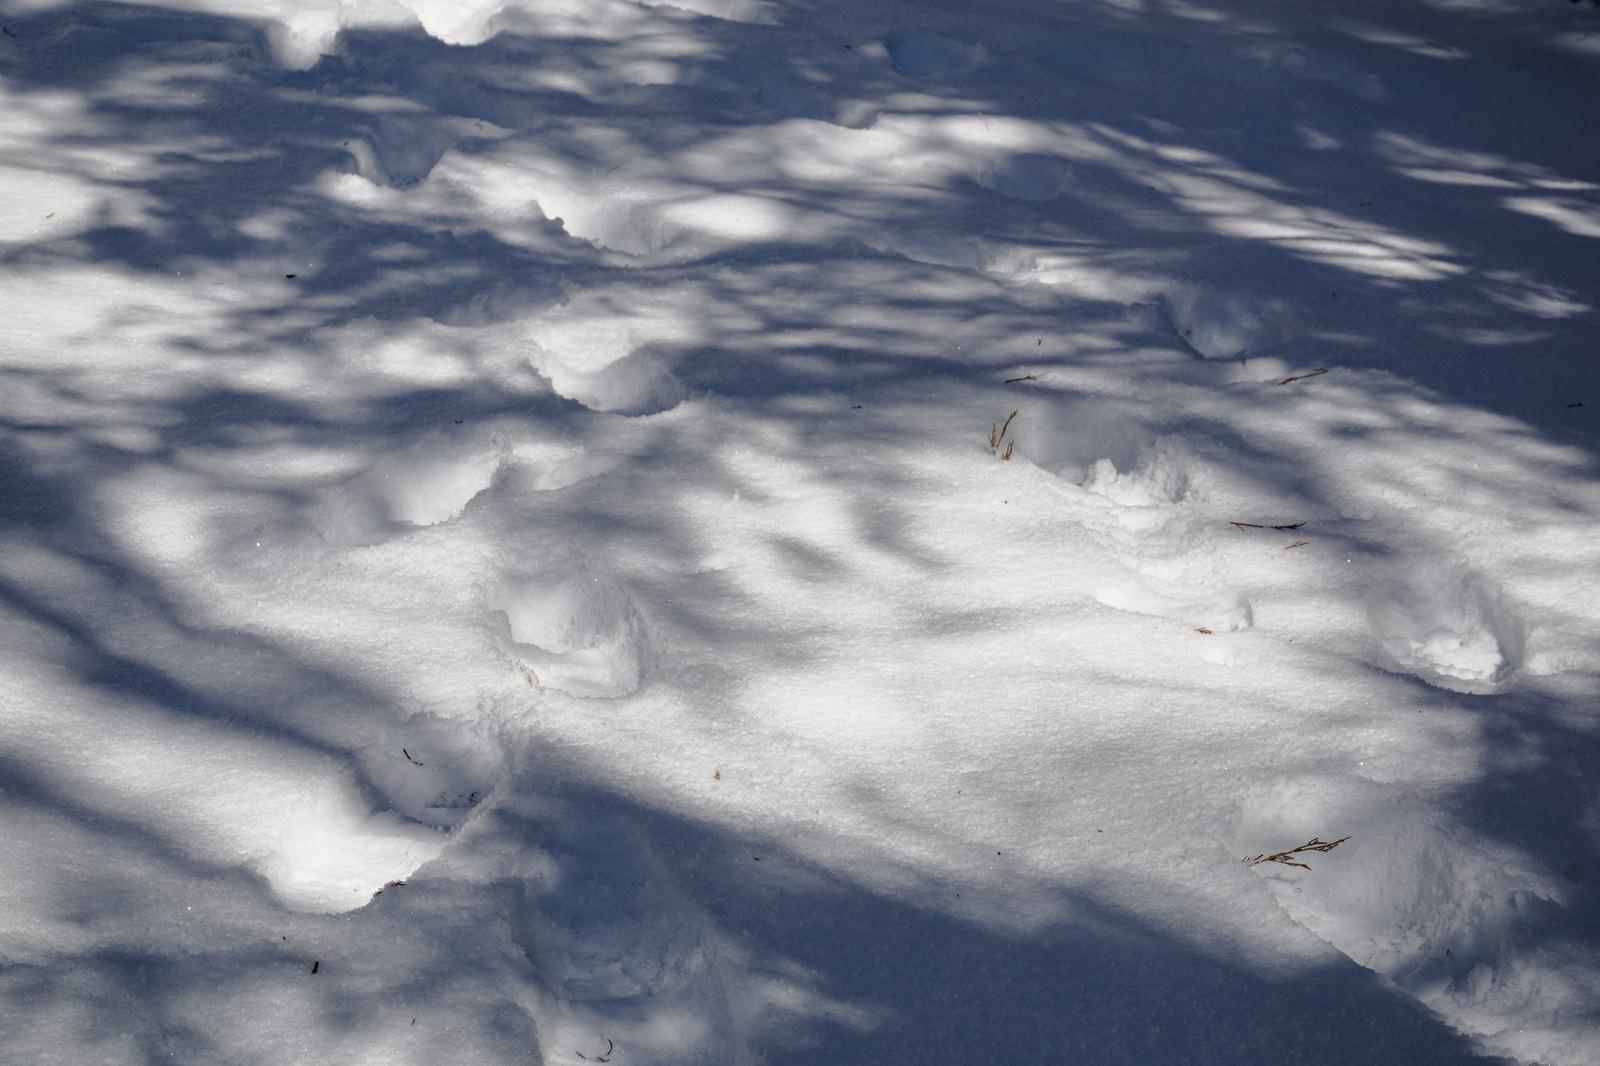 「木々の影と足跡が模様を描く雪上の様子 | フリー素材のぱくたそ」の写真